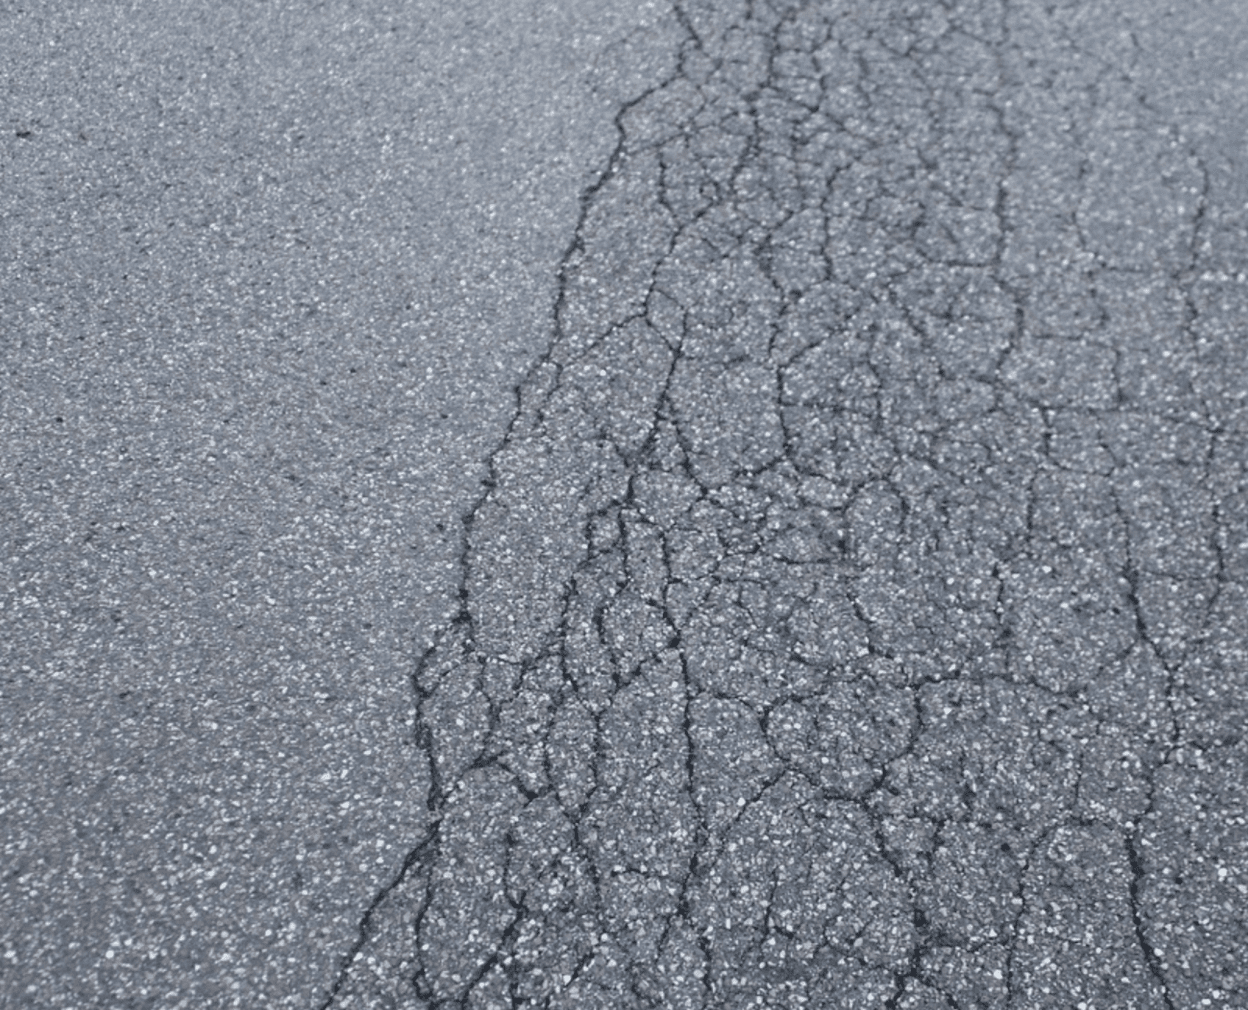 Parking Lot Fatigue Cracks